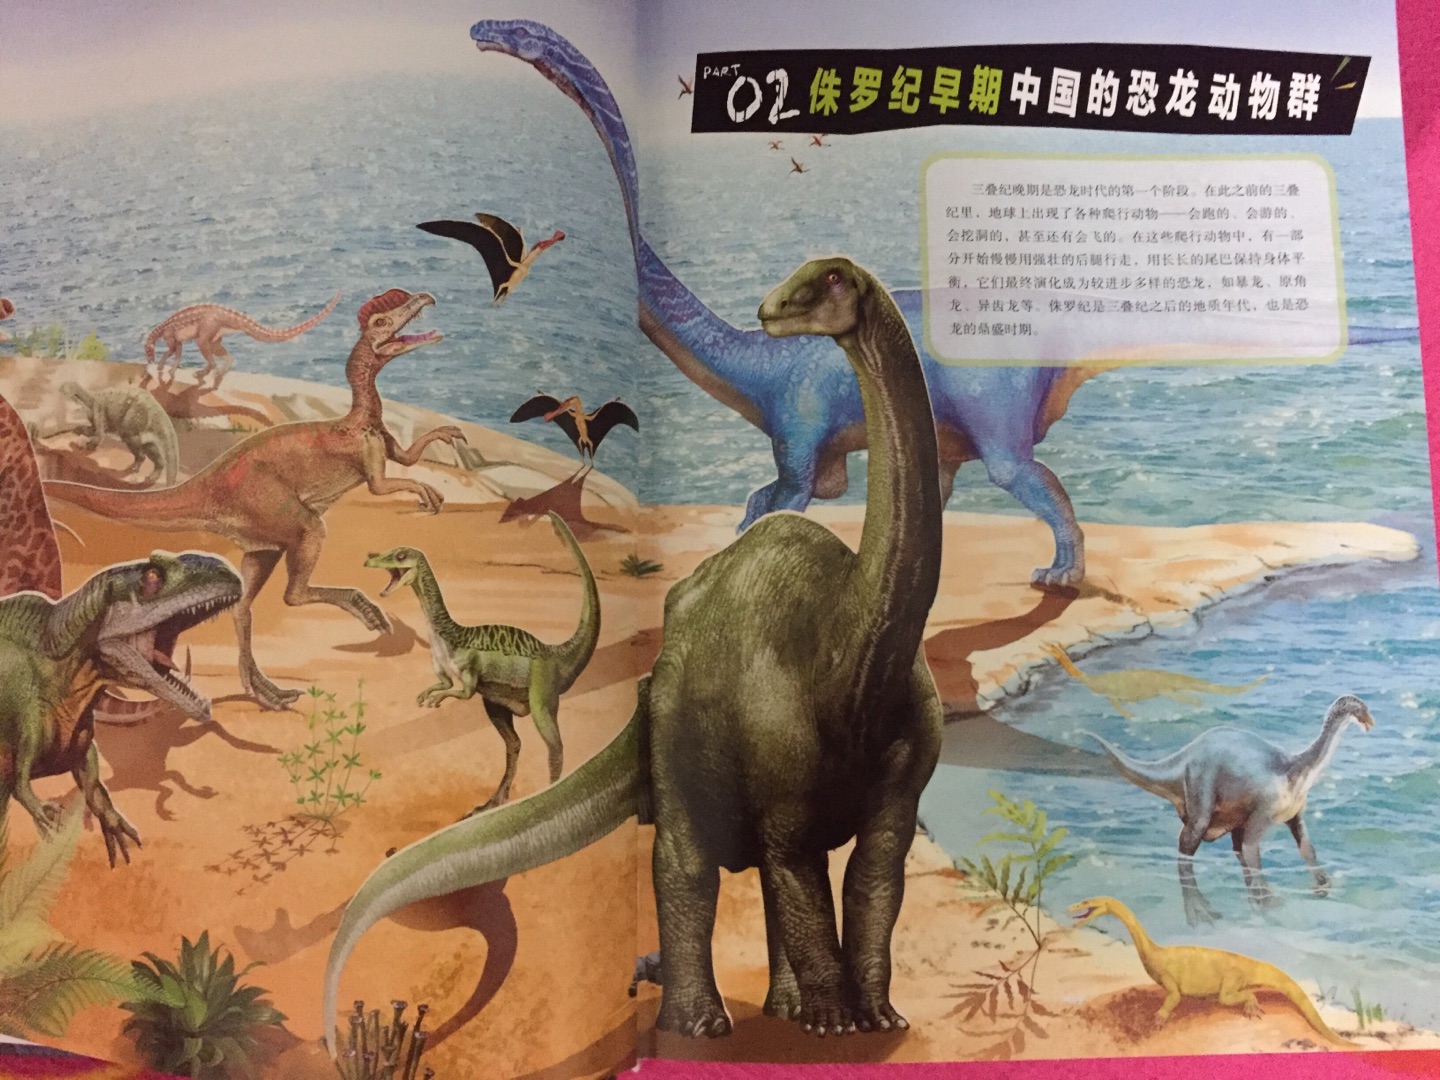 中国恐龙百科全书由“中国恐龙之父”董枝明编著。书中栩栩如生地从恐龙的起源、发展、和灭绝的历程讲起，精选160余种中国特有的恐龙，按照不同的年代（侏罗纪、白垩纪）进行详细介绍，辅以精心绘制的插画，力求还原真实的中国恐龙面貌，让孩子了解中国独有的恐龙。书开头概述部分在时间轴上汇总了书中提到的恐龙，小朋友对这些恐龙出现的先后顺序可以一目了然。后面逐一对恐龙予以讲解，包括它们的分类、分布、特点、资料档案等，内容严谨又不失趣味，绝对是一本可以传承的好书。